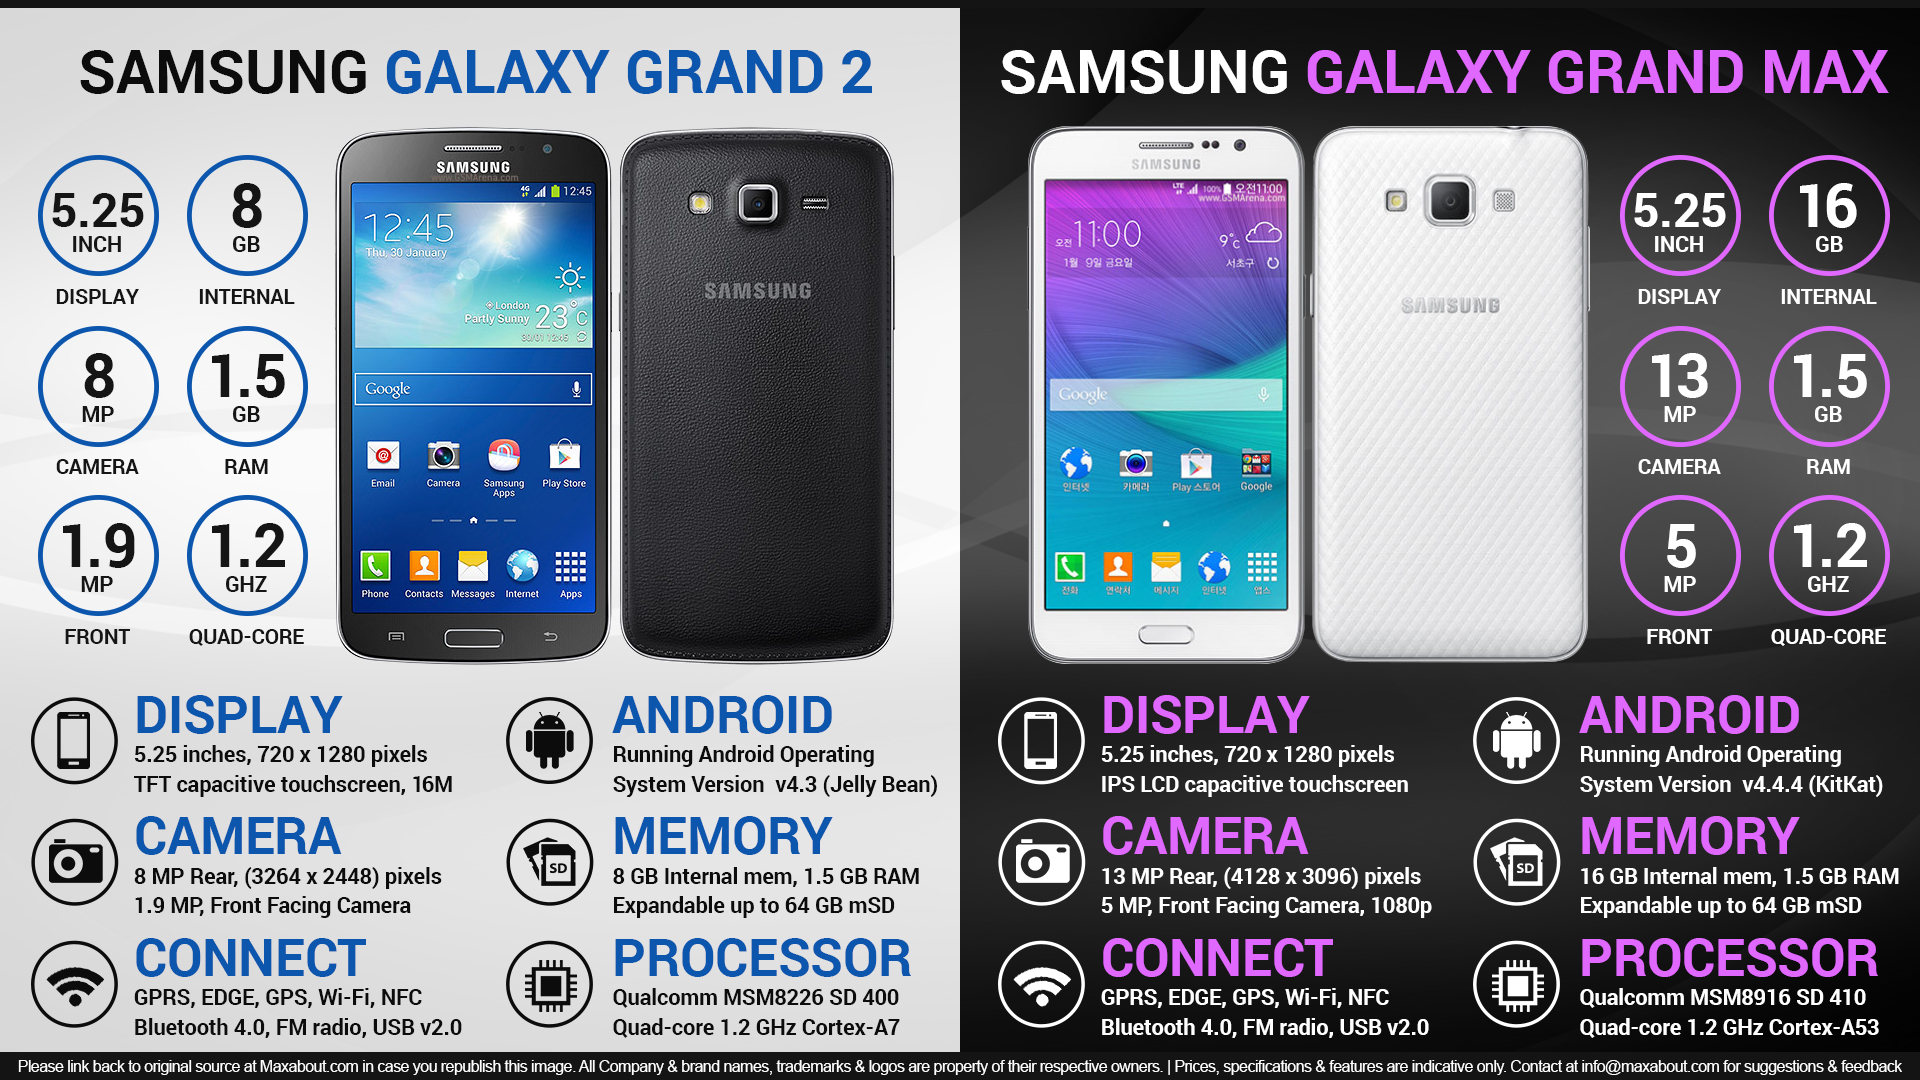 Samsung Galaxy Grand 2 vs. Samsung Galaxy Grand Max